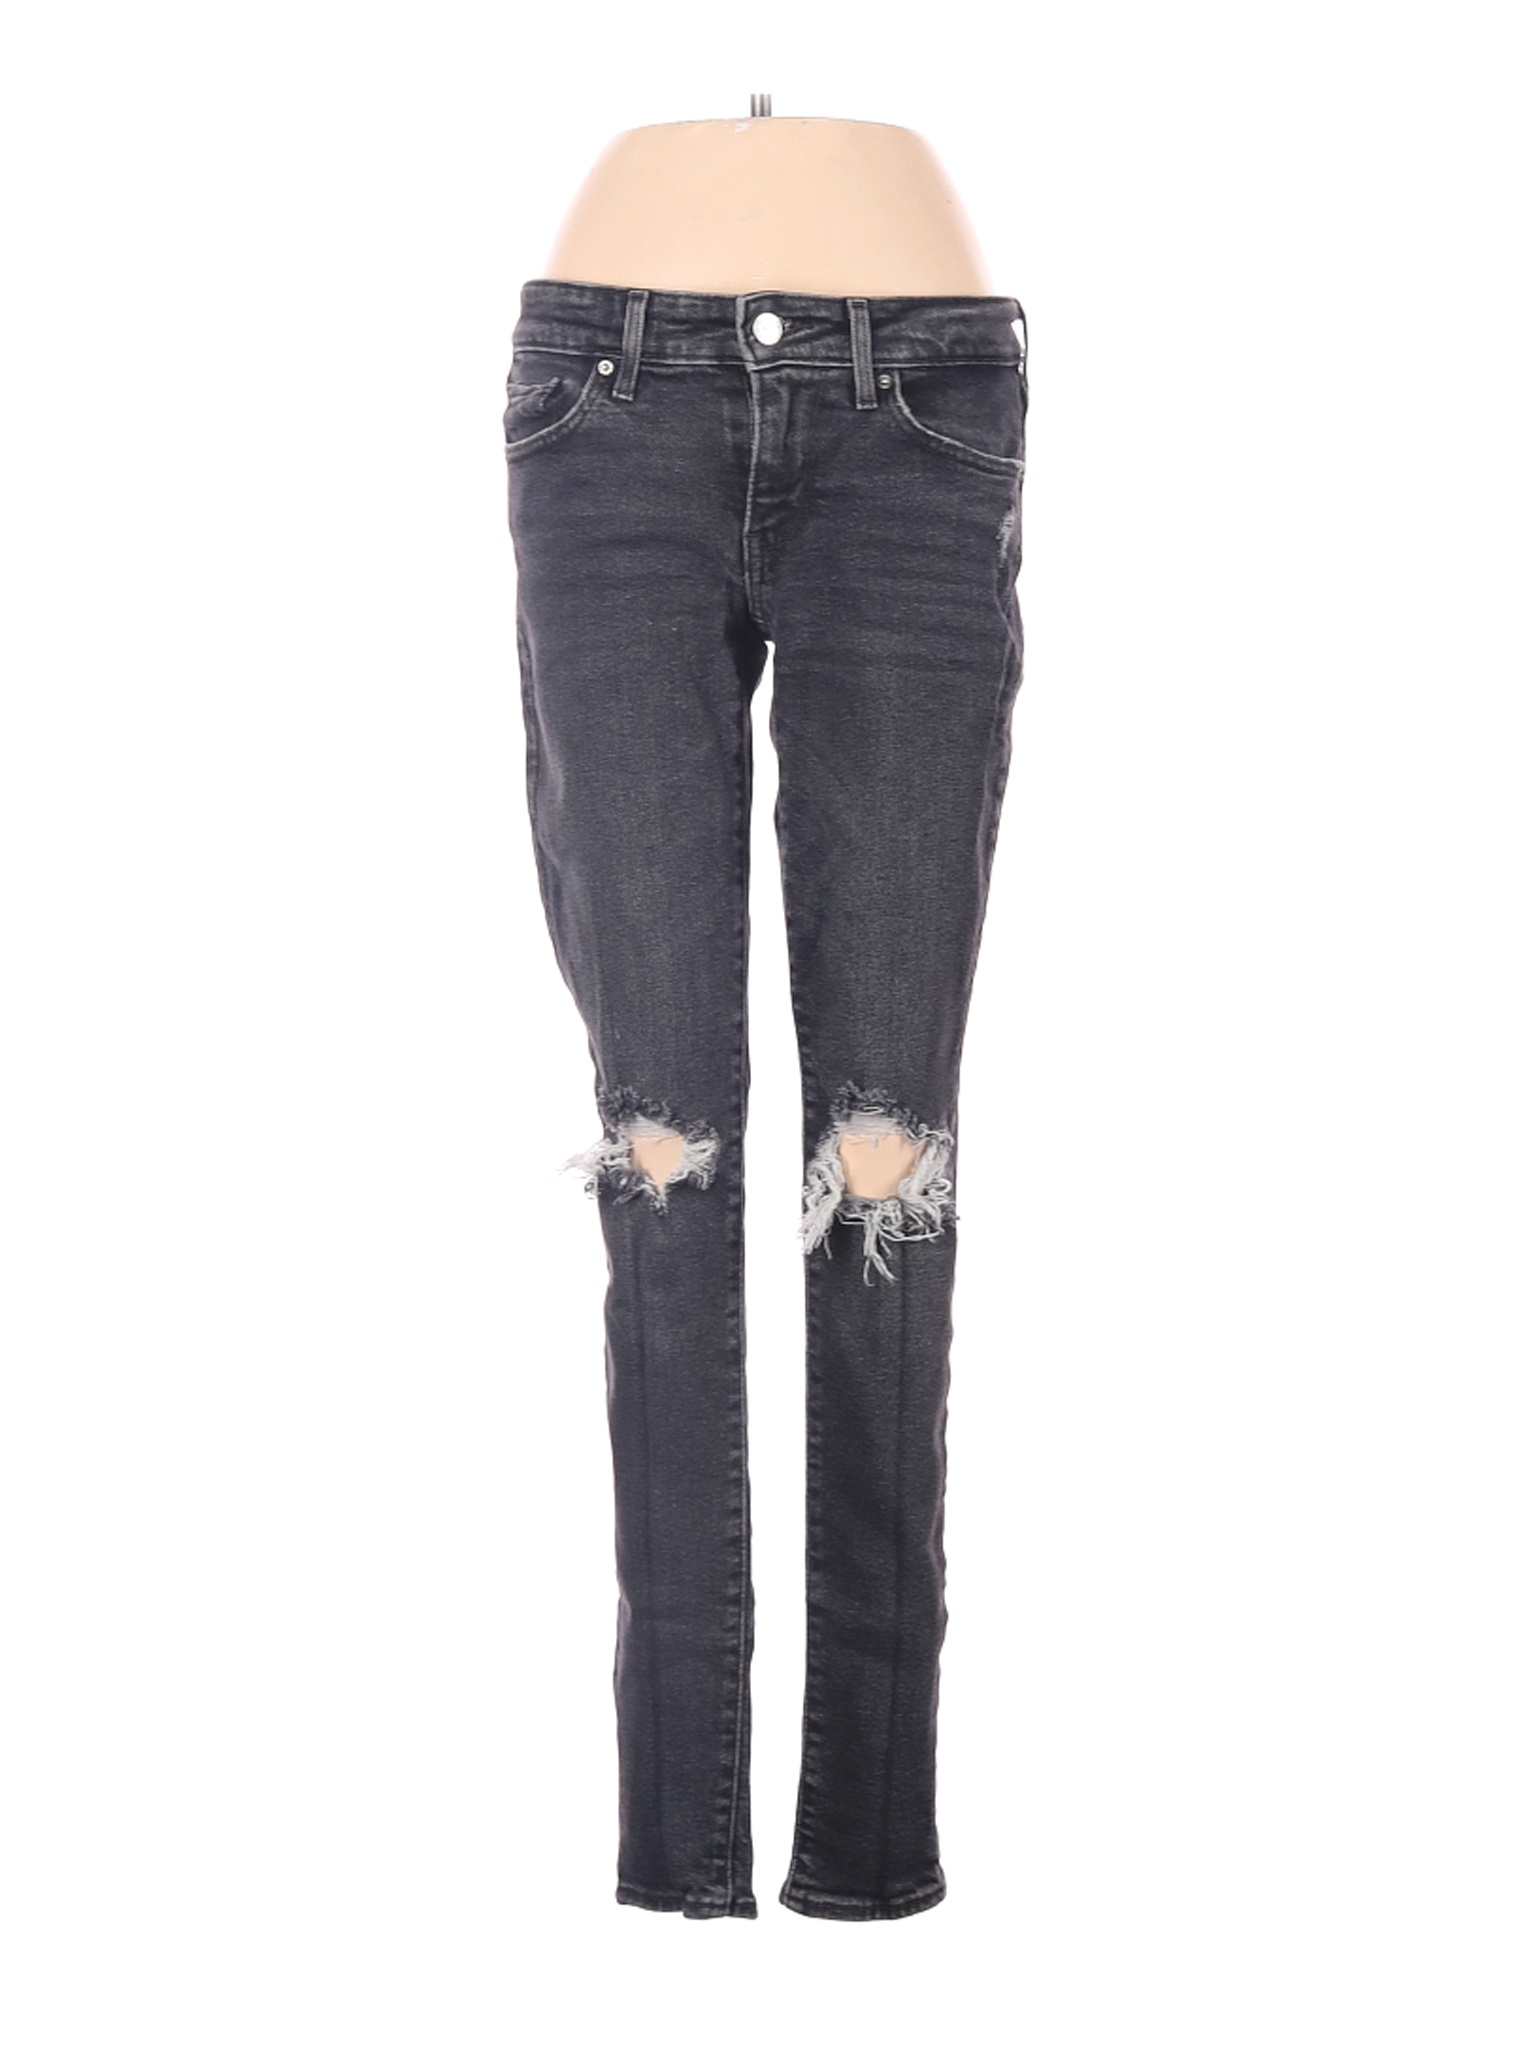 Levi's Women Gray Jeans 24W | eBay